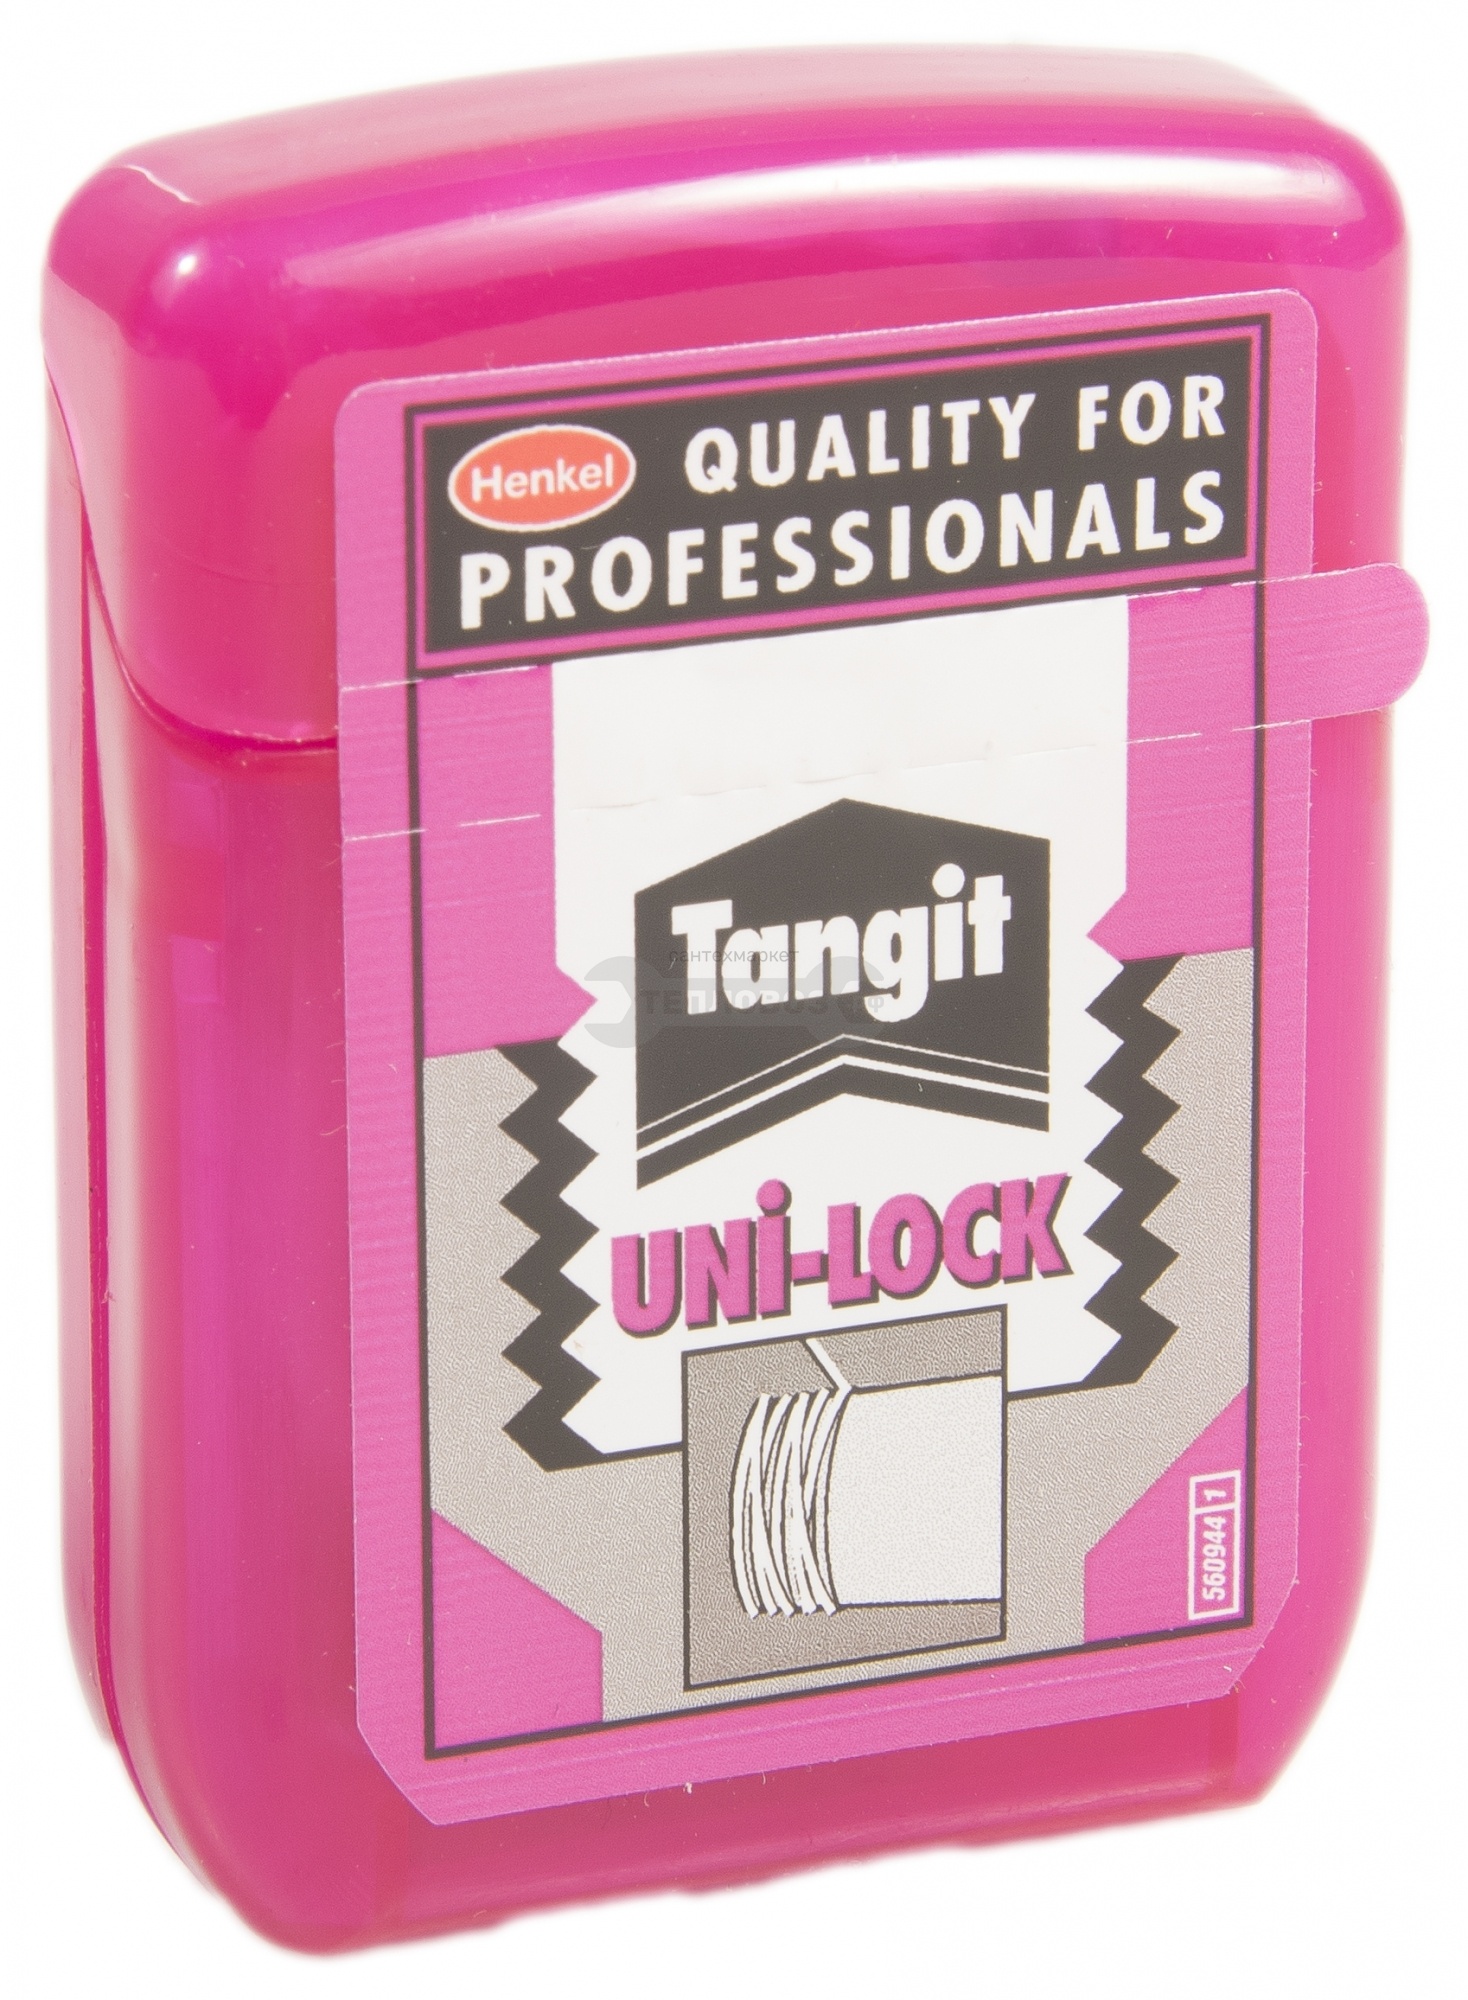 Купить Henkel Tangit UNI-Lock, 20 м в интернет-магазине Дождь